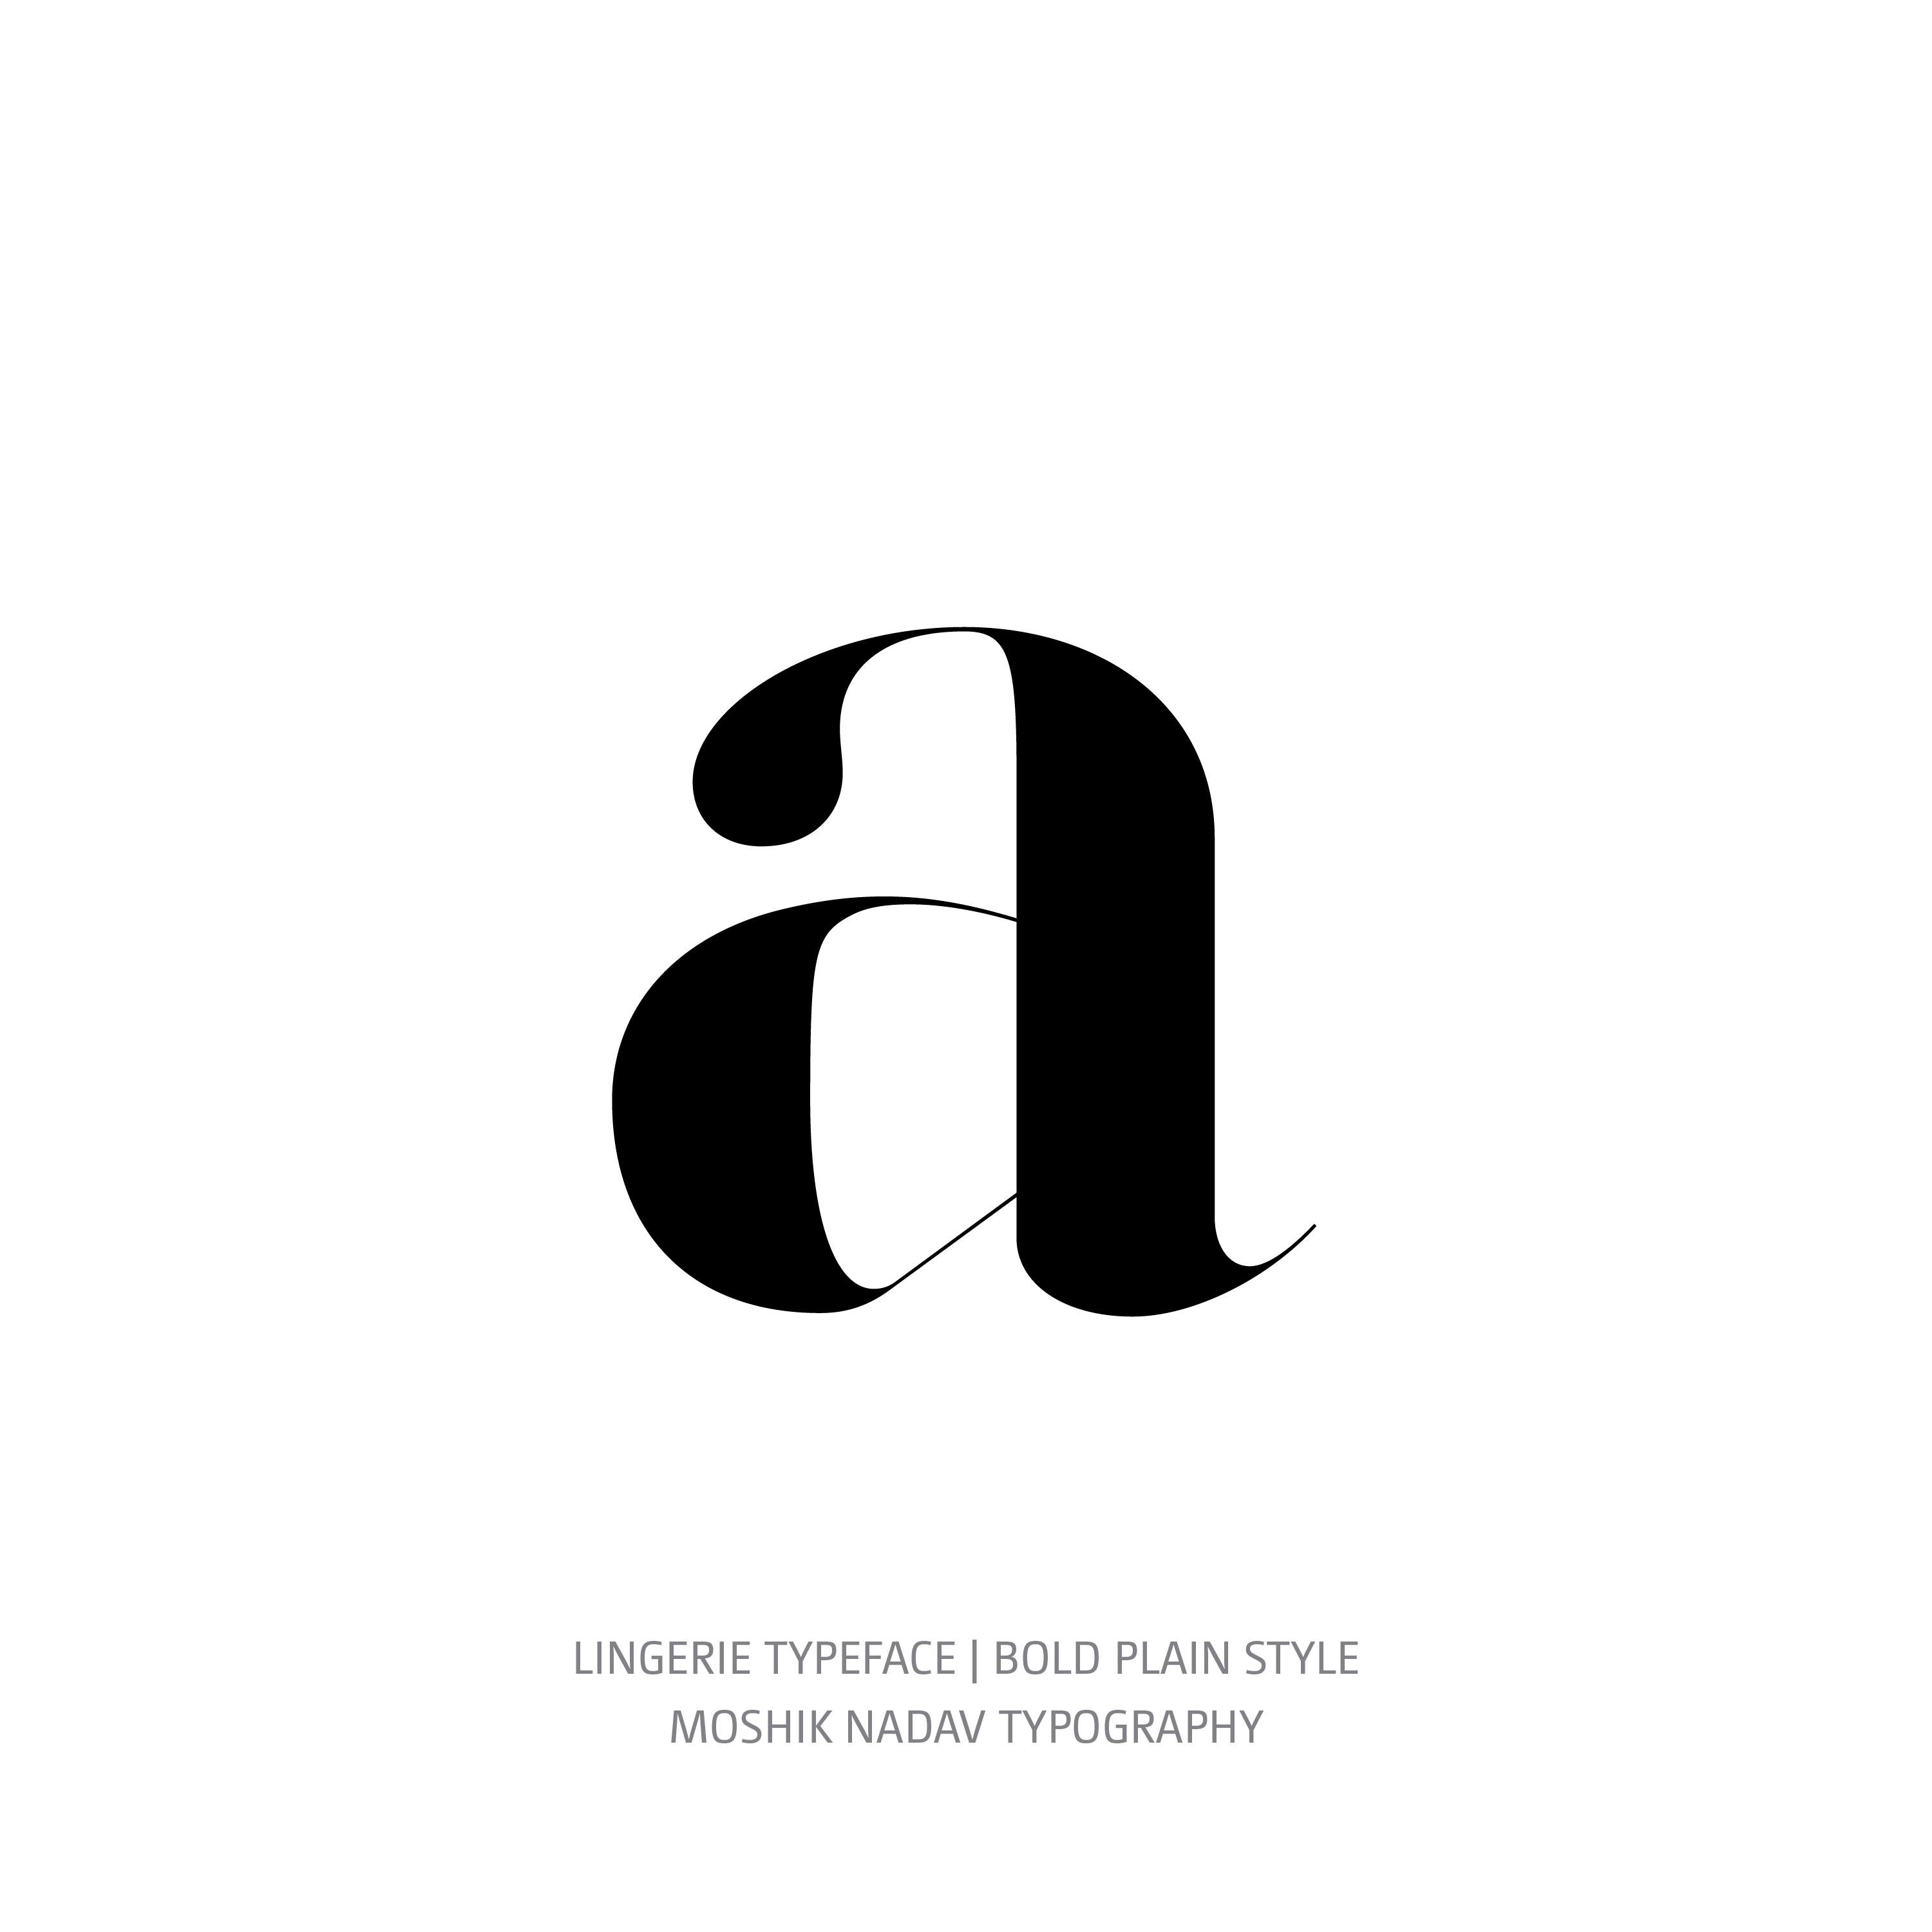 Lingerie Typeface Bold Plain a